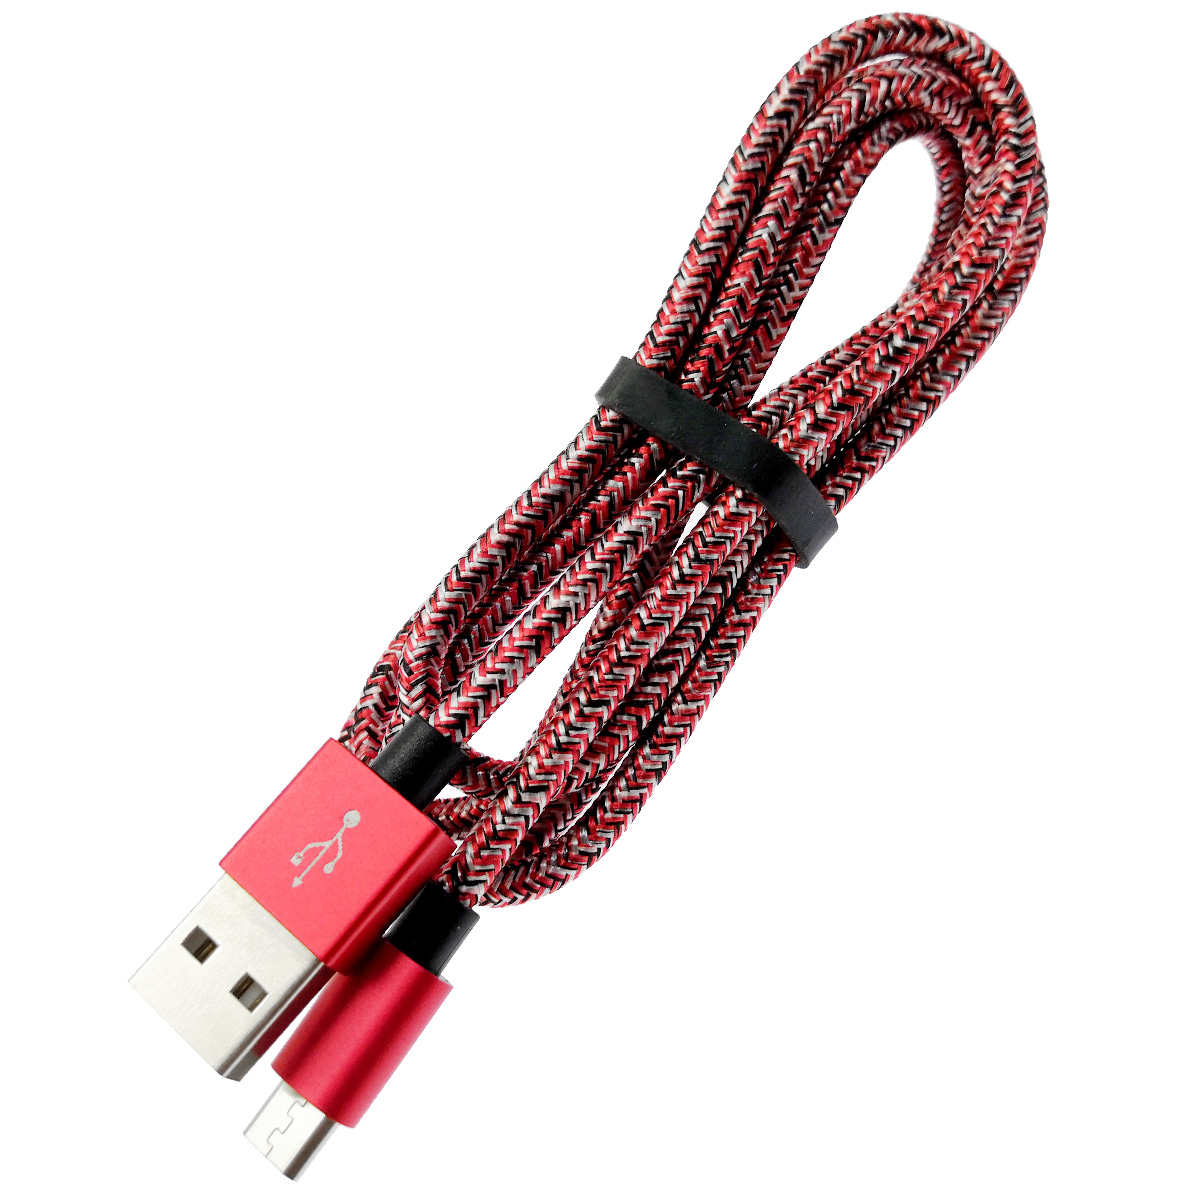 USB Дата кабель SADG&SHRFG Micro USB, длина 1 метр, тканевое армирование, цвет красно белый